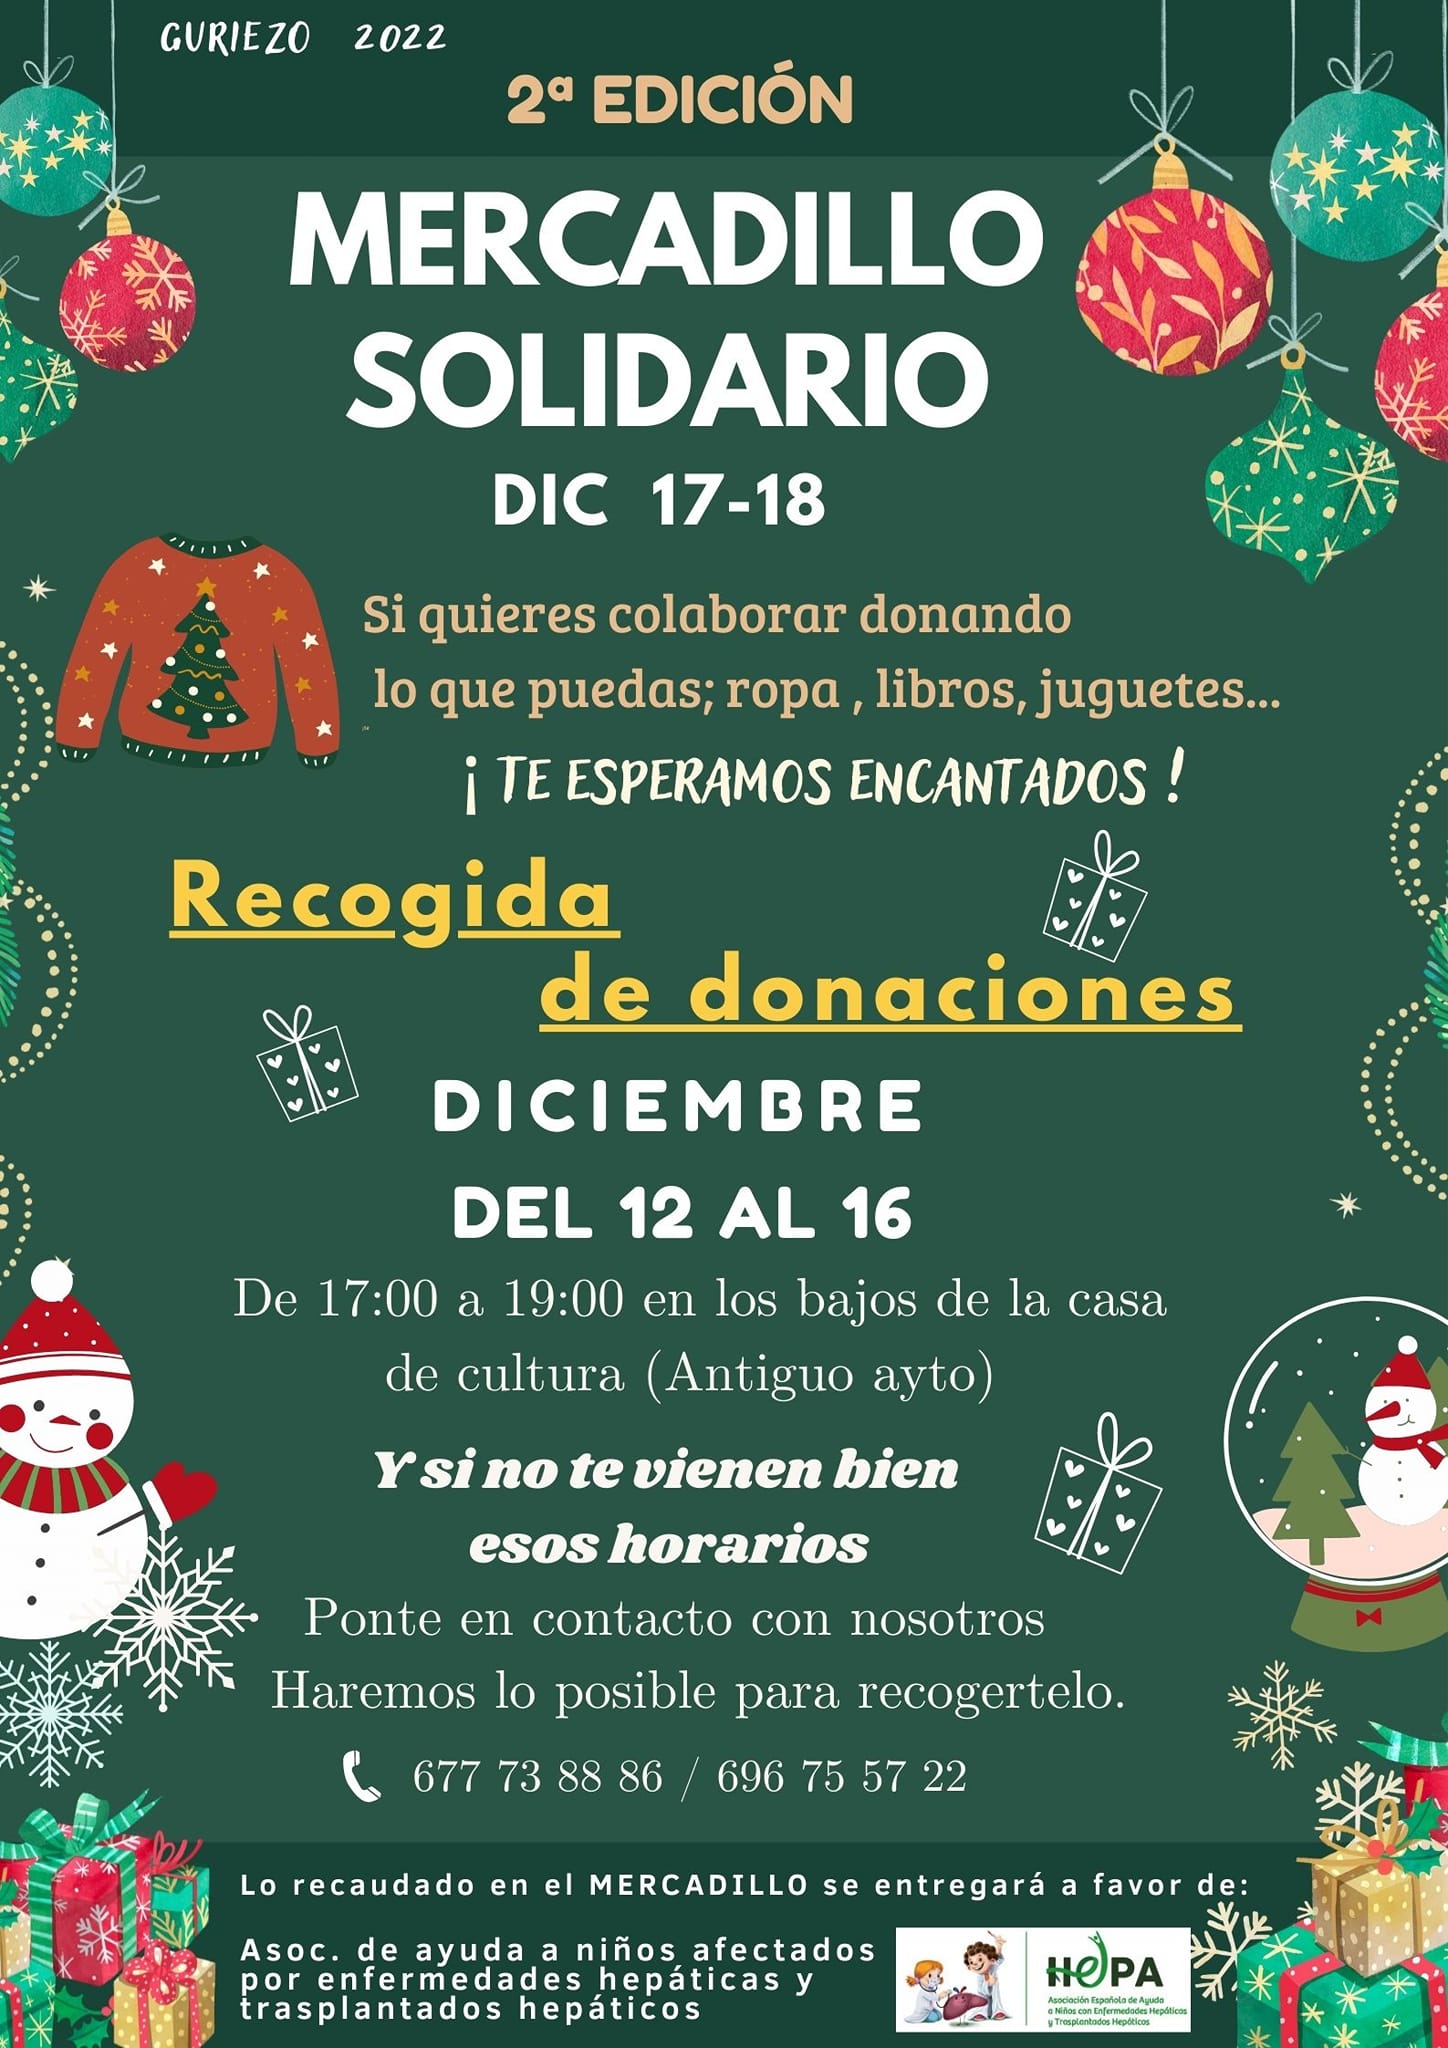 Mercadillo Solidario 2022 - Guriezo